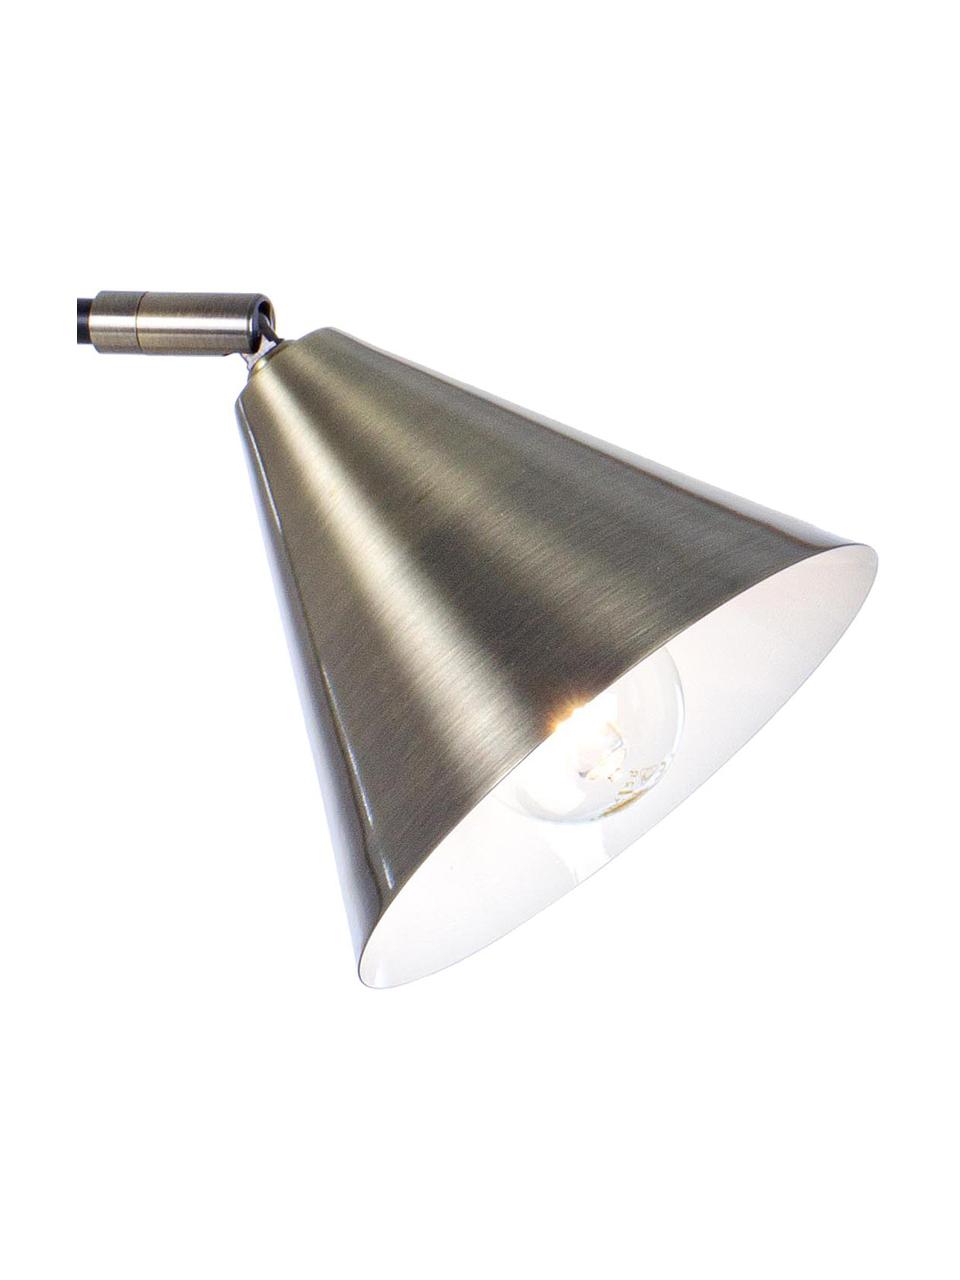 Retro-Schreibtischlampe Loft mit Antik-Finish, Lampenschirm: Metall, Lampenfuß: Metall, Goldfarben mit Antik-Finish, Schwarz, 14 x 43 cm